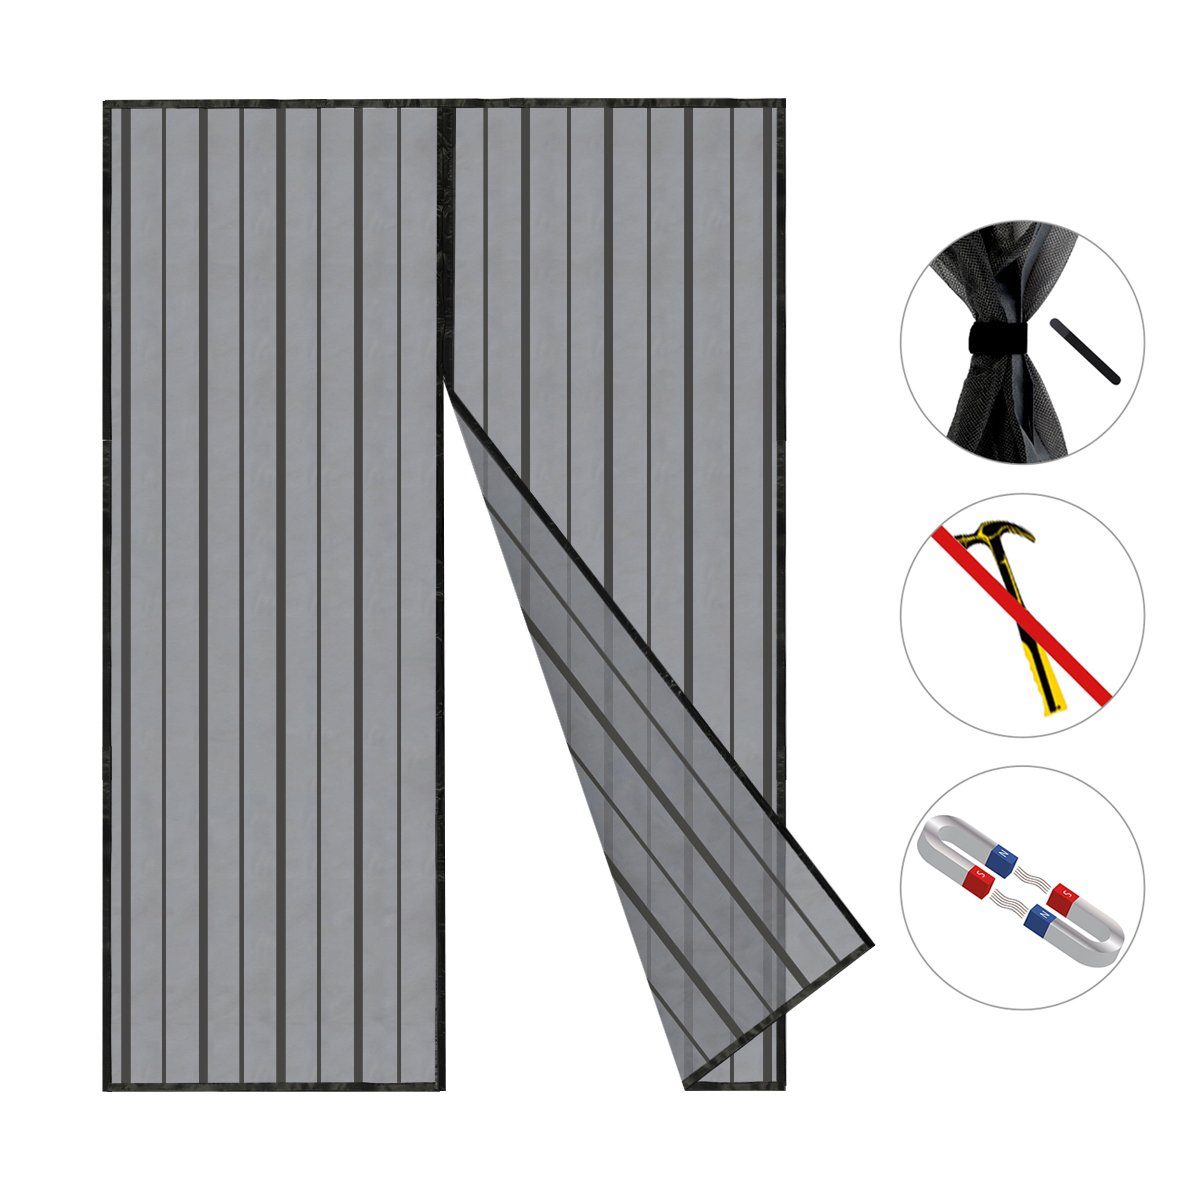 Sekey Insektenschutz-Tür Magnet Fliegengitter Tür ohne Bohren Insektenschutz Magnetvorhang, 160x235cm für Balkontür, Terrassentür, Kellertür